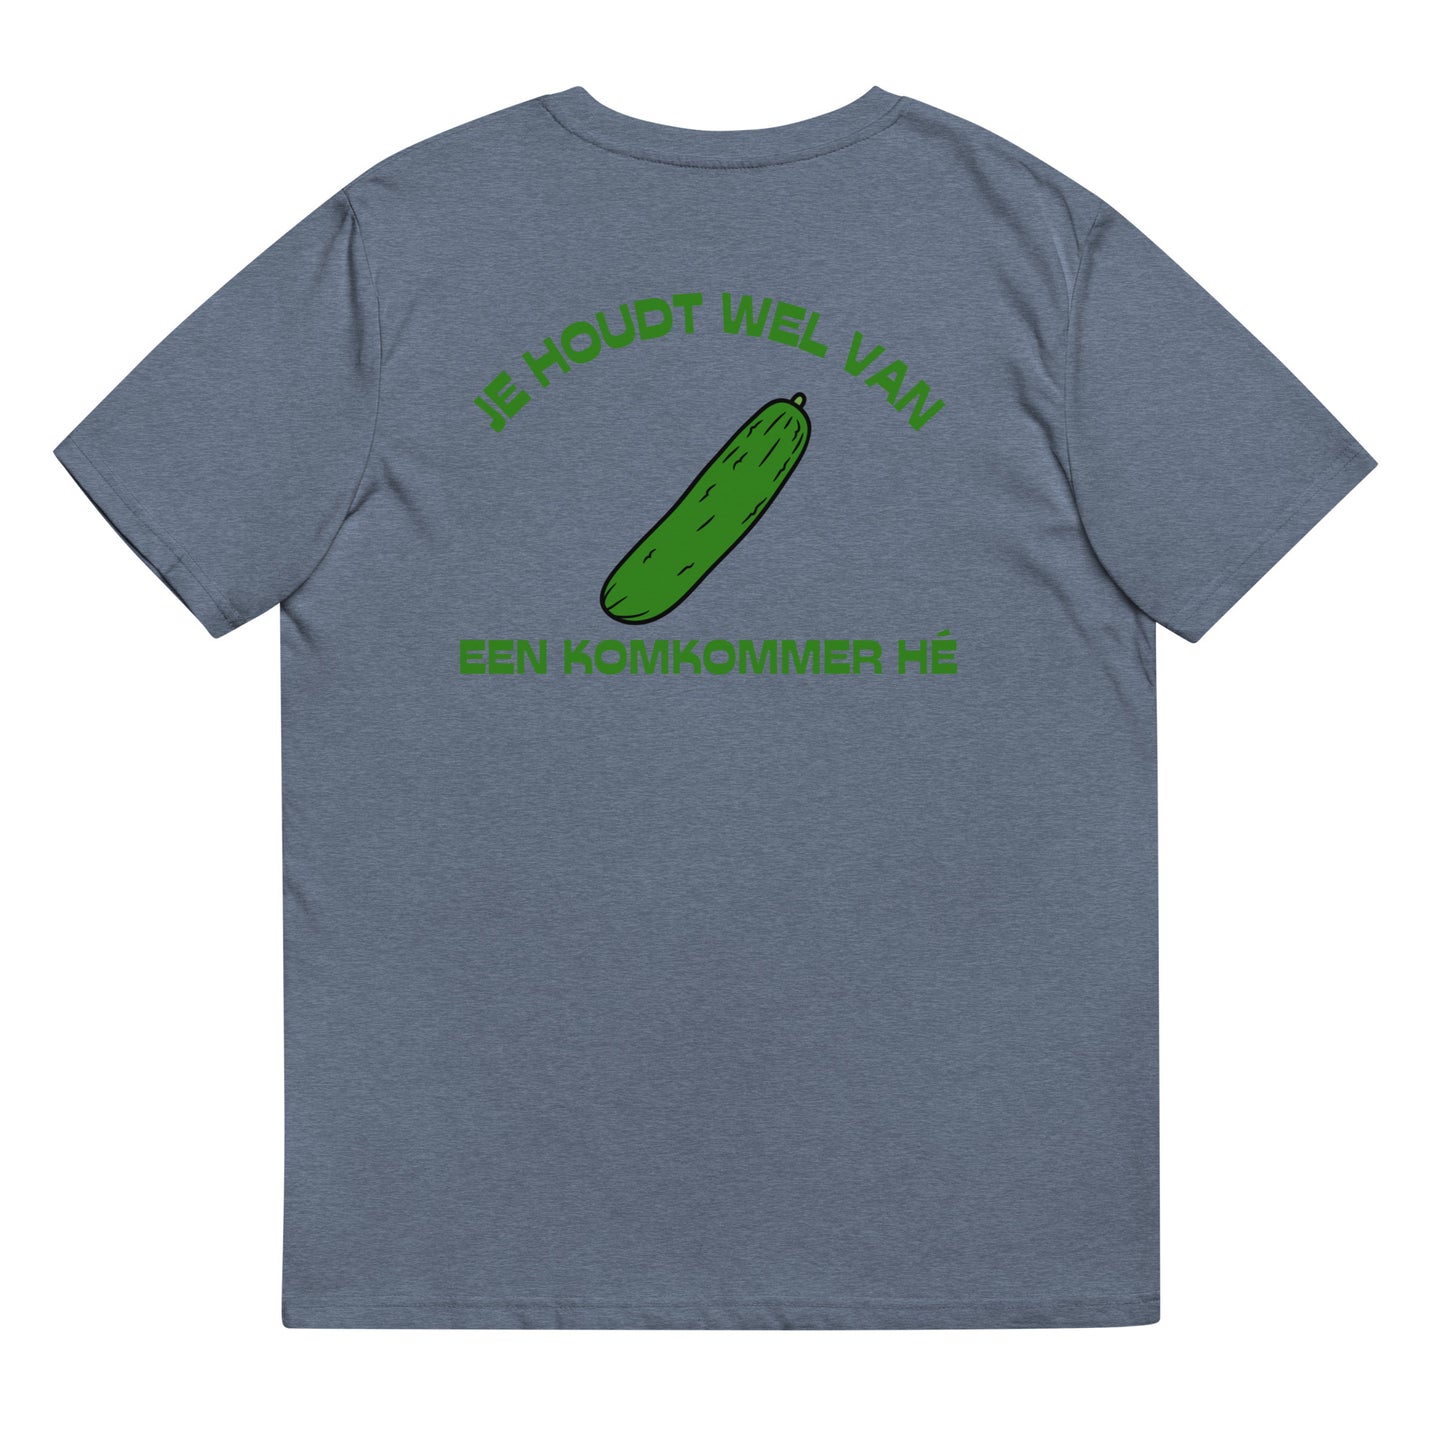 Je Houdt Wel Van Een Komkommer Hé T-shirt